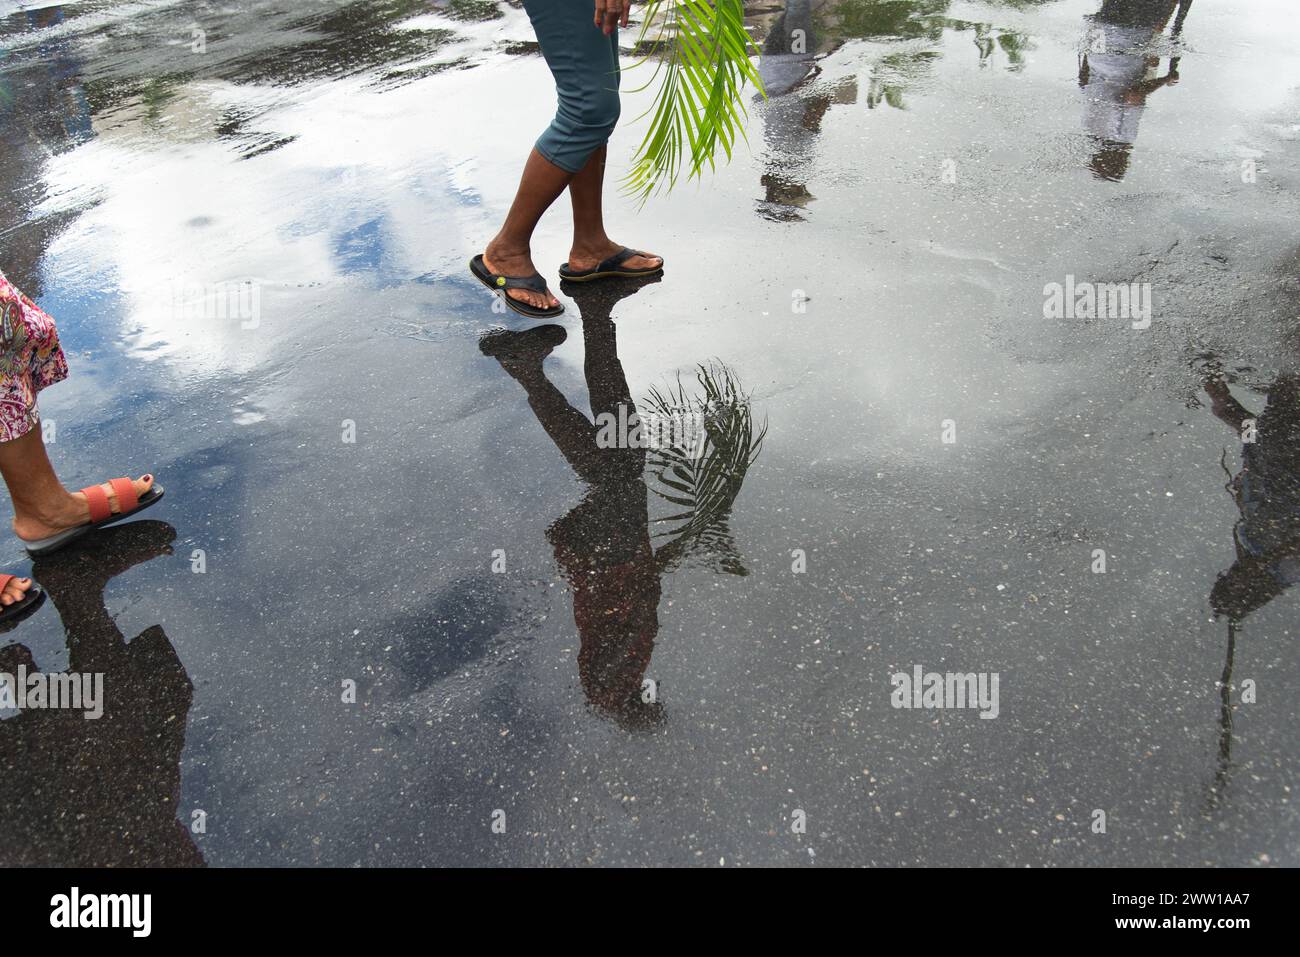 Salvador, Bahia, Brésil - 14 avril 2019 : on voit des catholiques, en réflexion sur le sol humide, tenir des plantes pendant la célébration du dimanche des Rameaux en th Banque D'Images